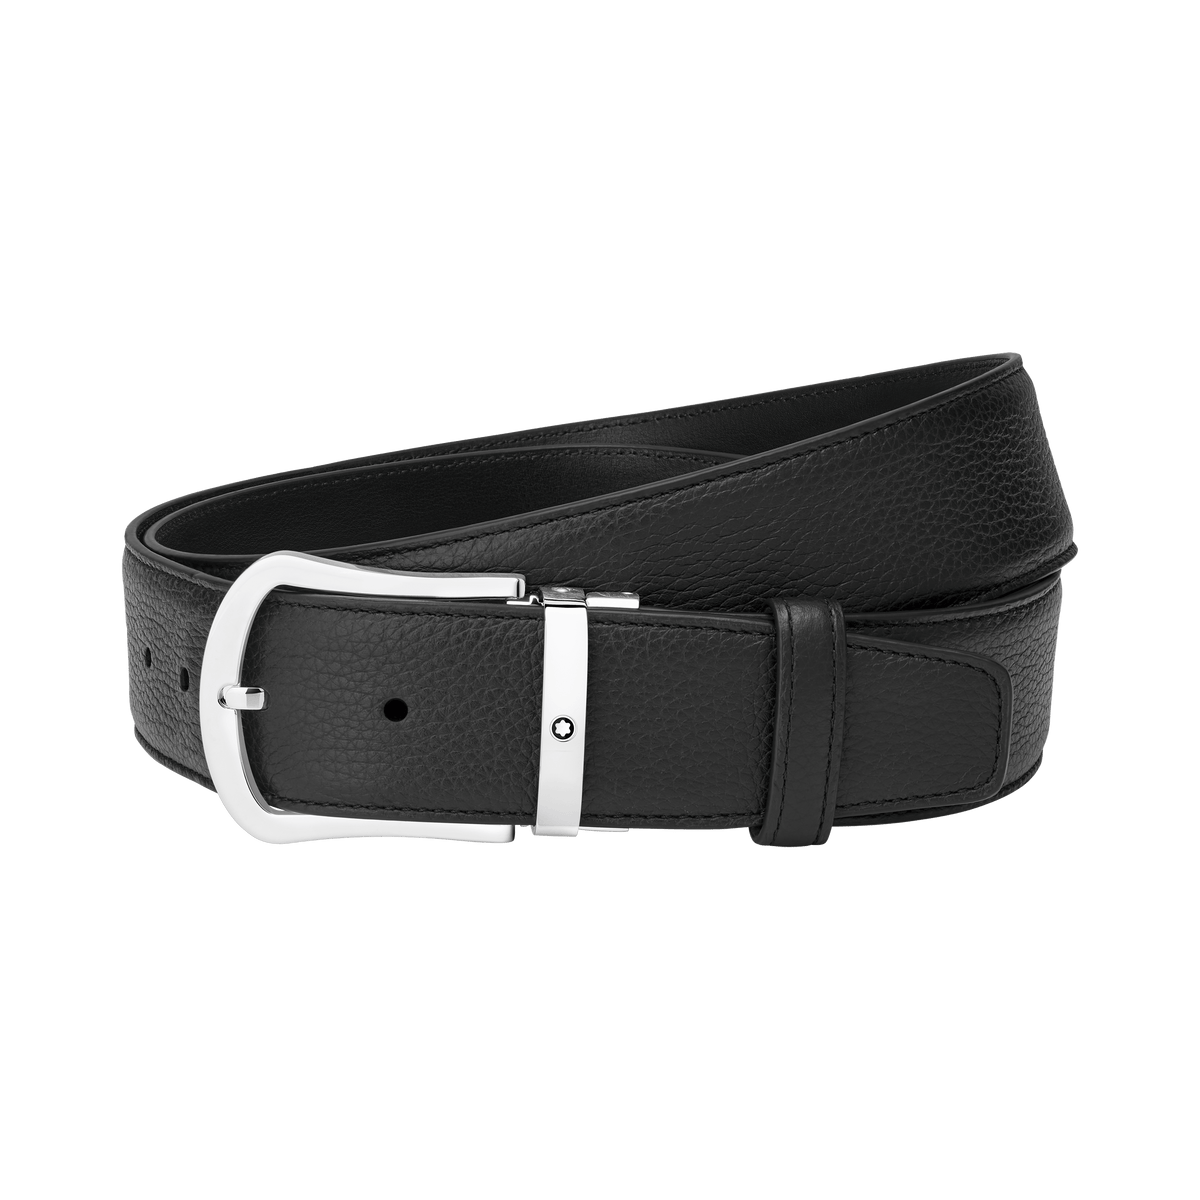 Black 40 mm leather belt